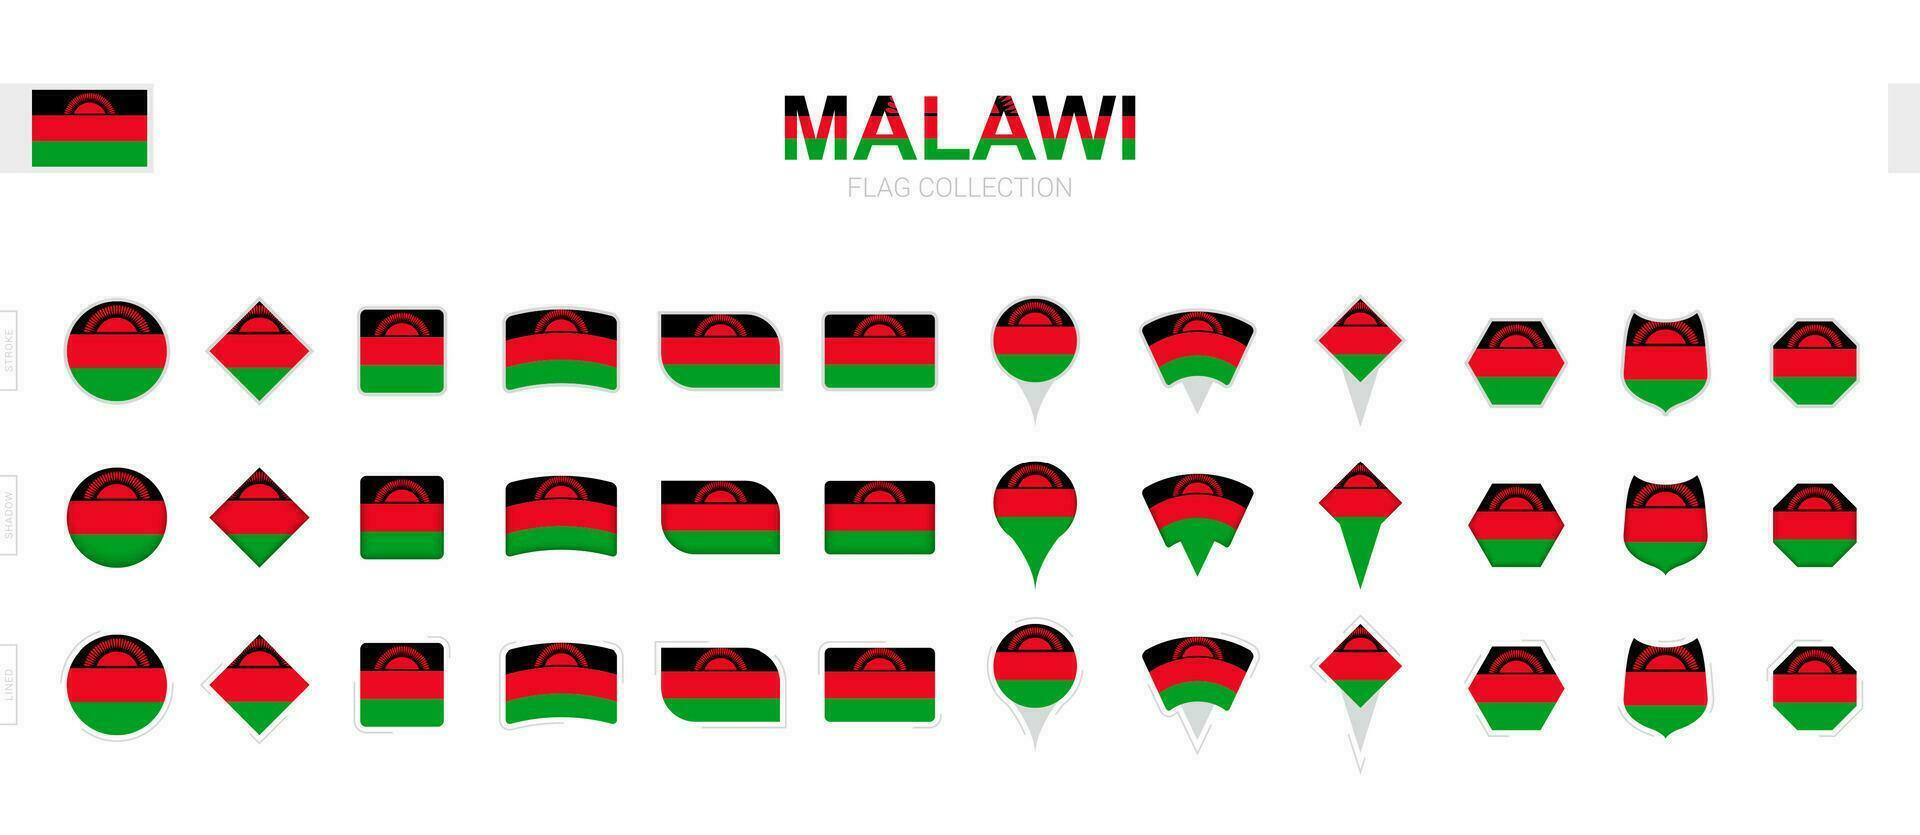 stor samling av malawi flaggor av olika former och effekter. vektor